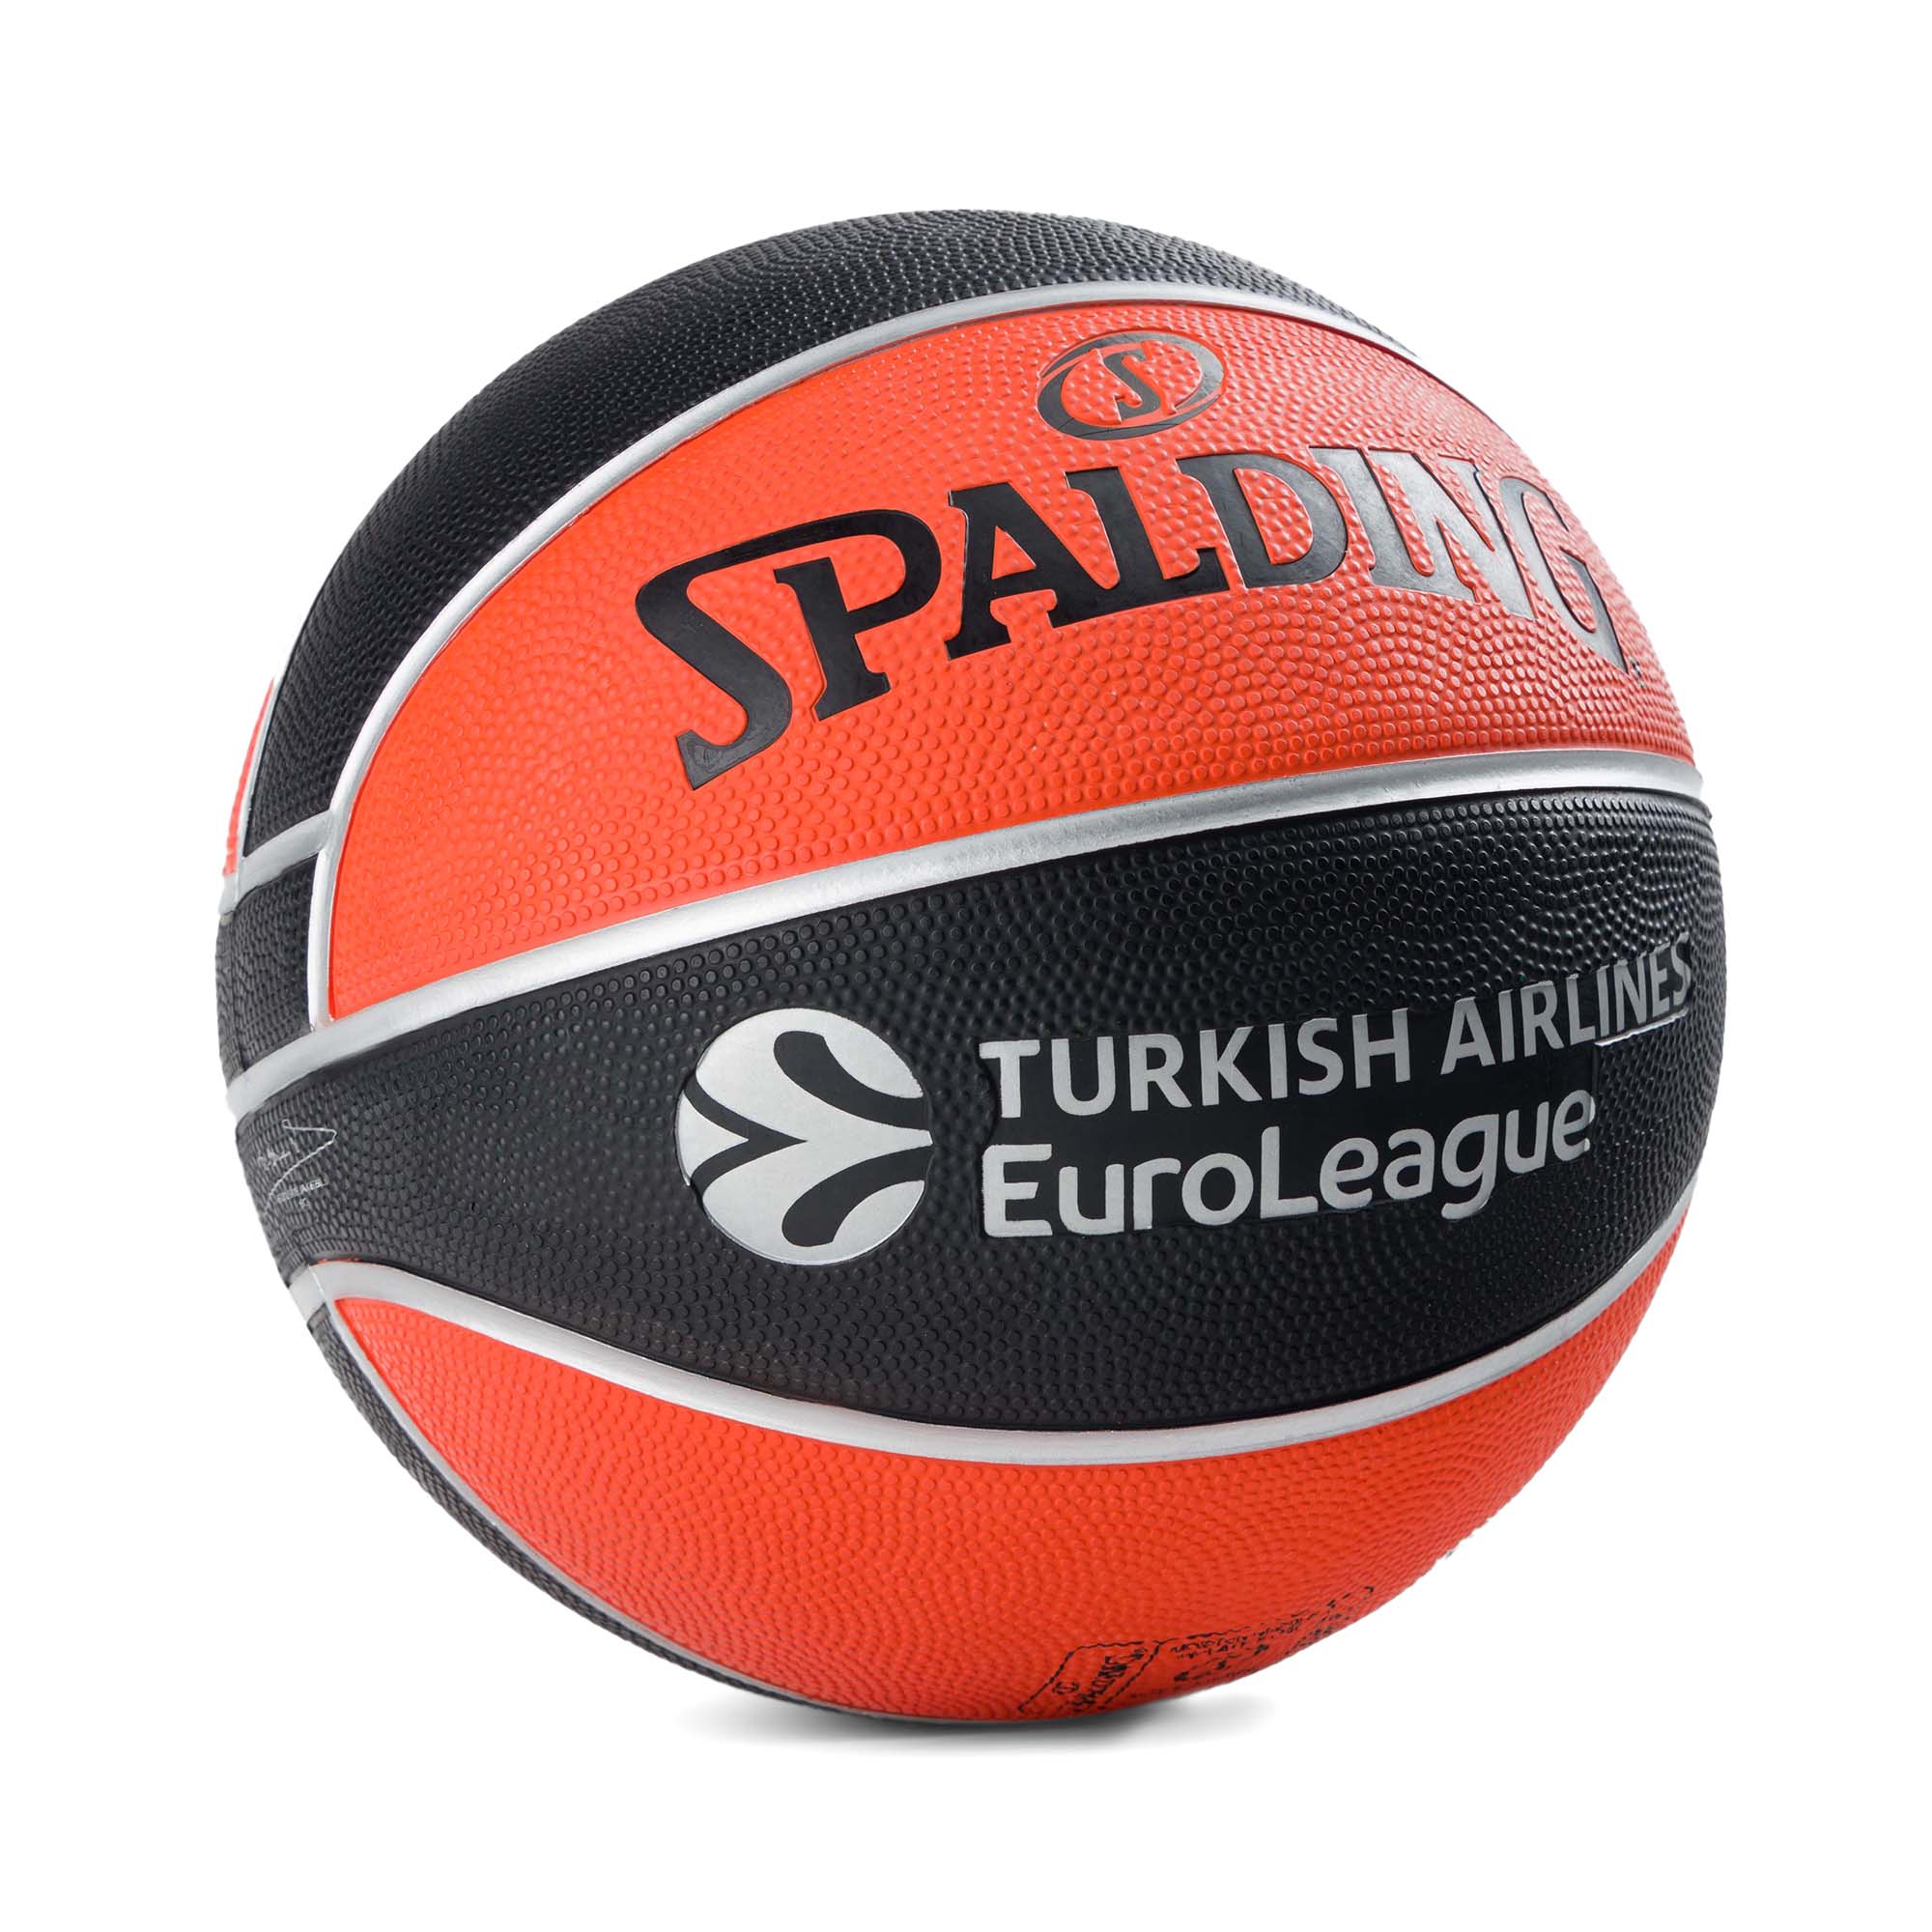 Piłka do koszykówki Spalding Euroleague TF-150 6